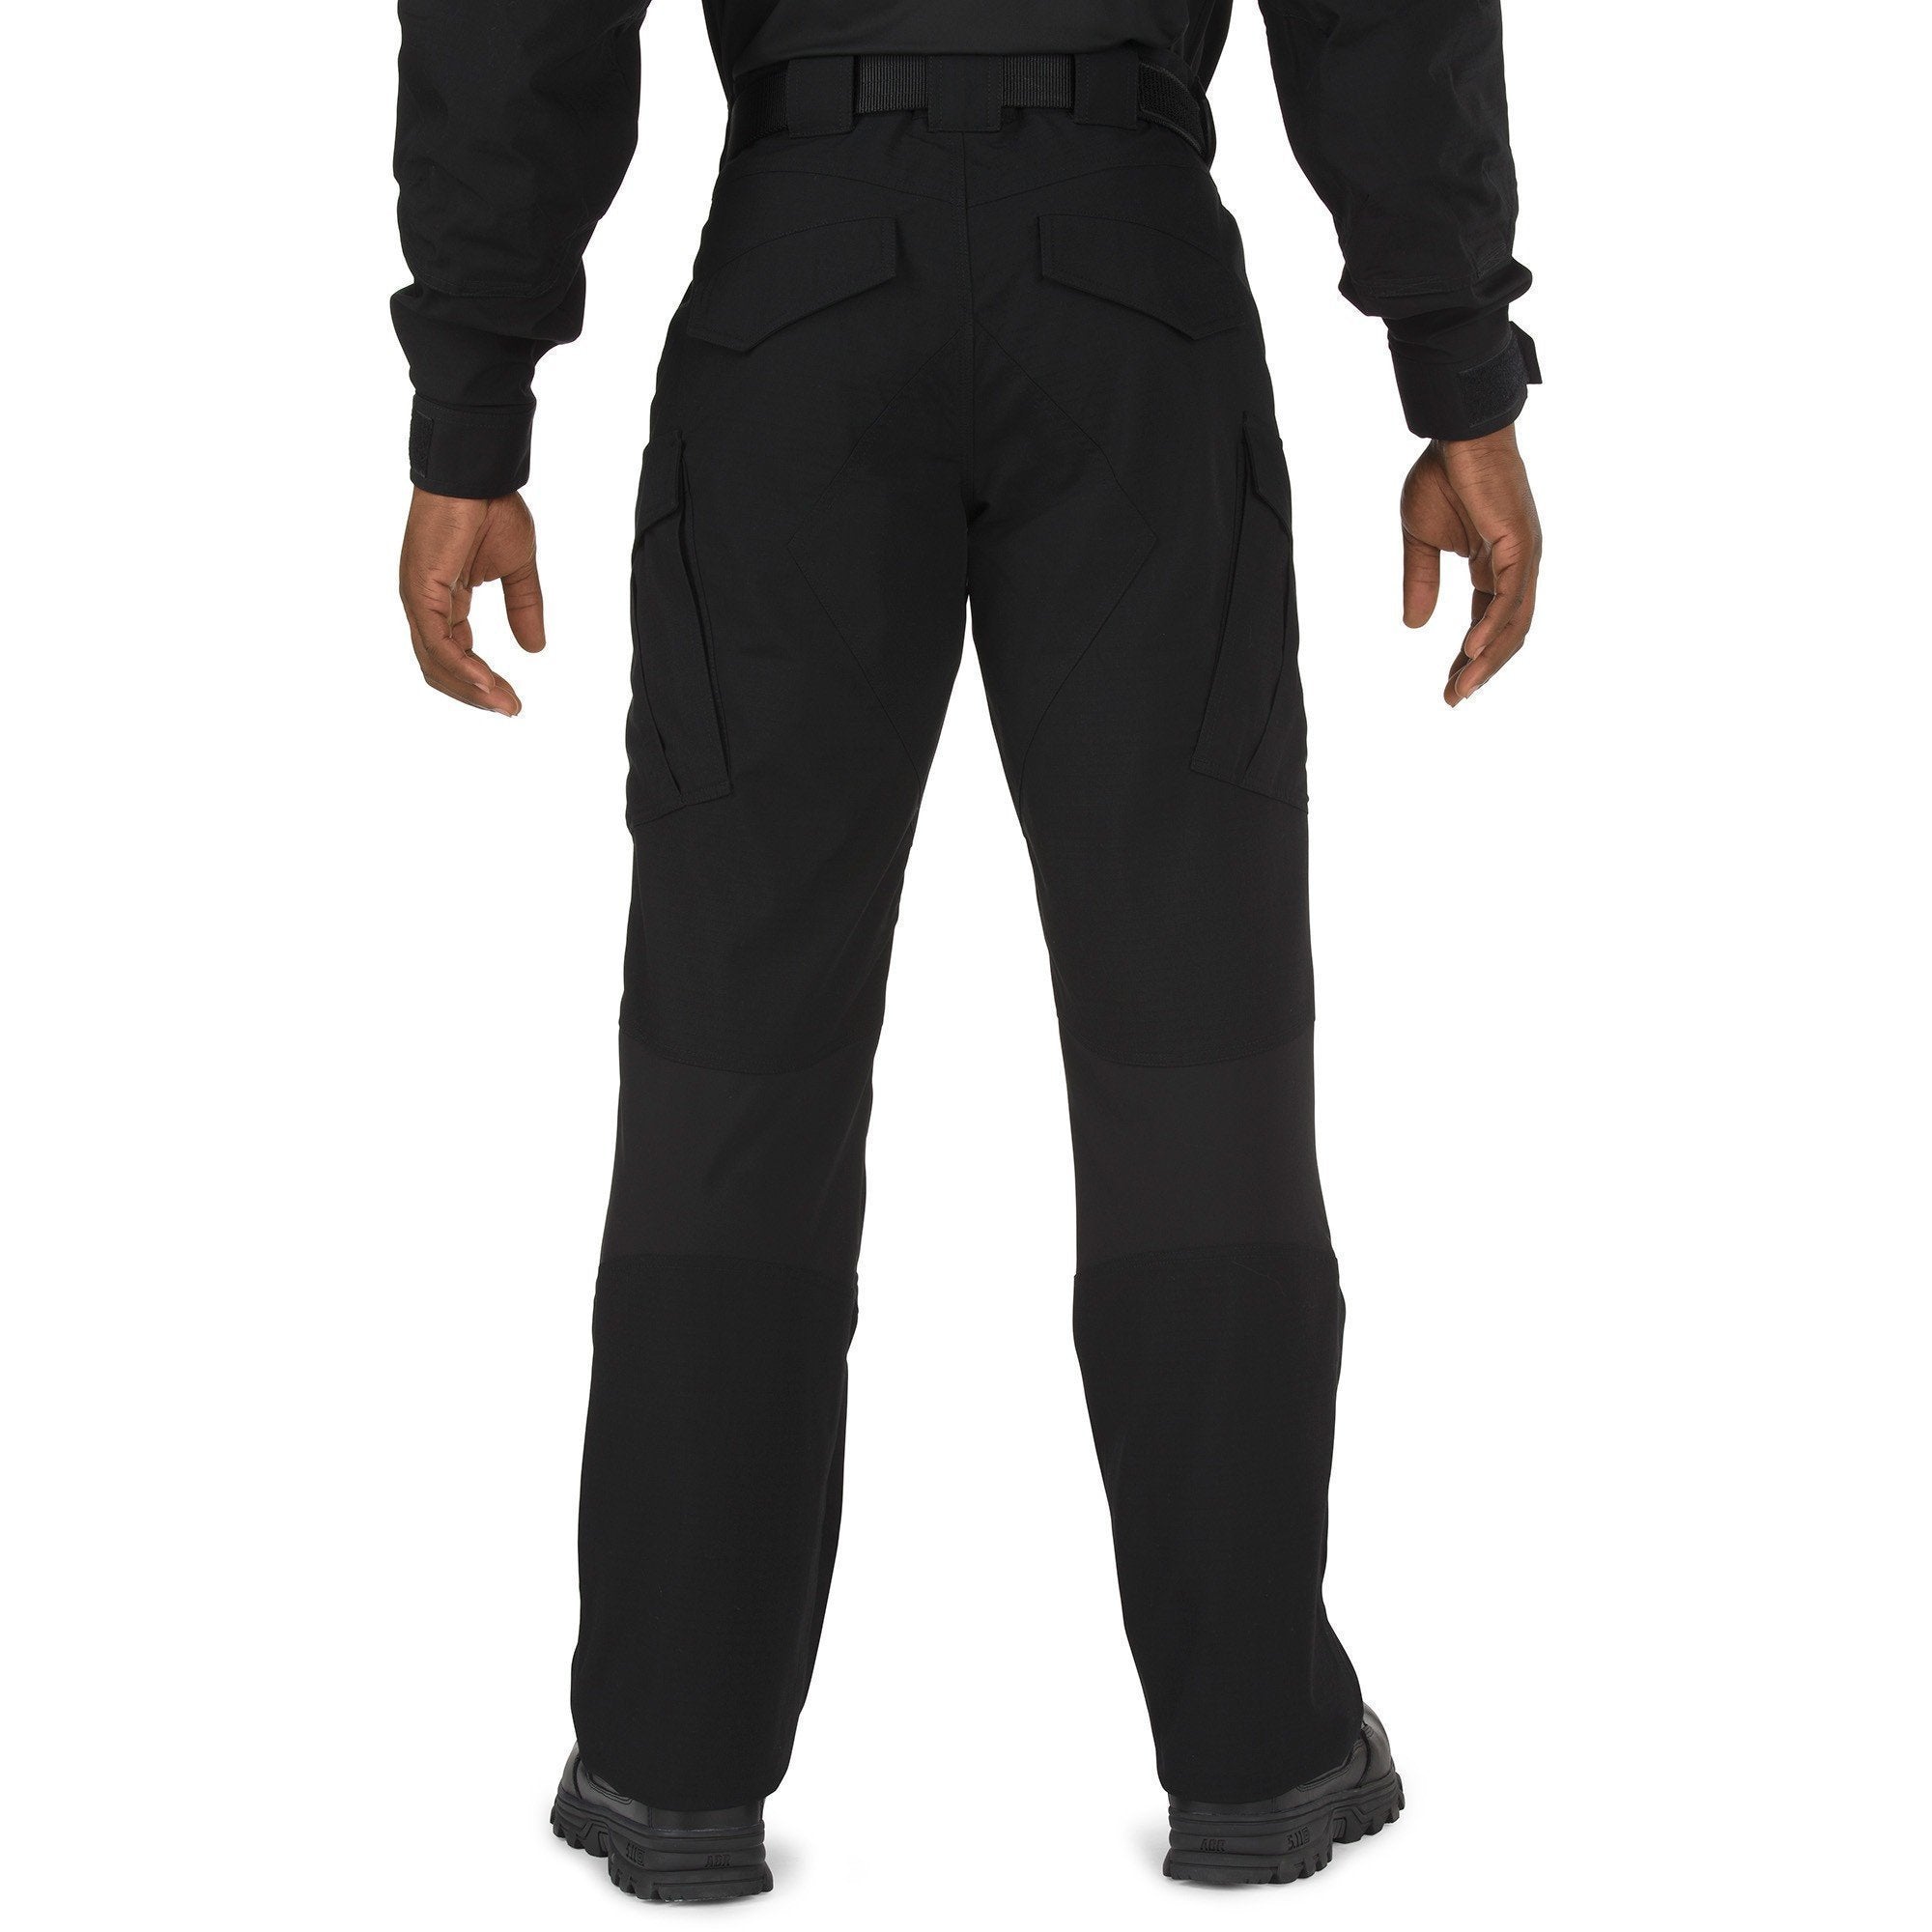 5.11 Tactical Stryke TDU Pants - Black Pants 5.11 Tactical Tactical Gear Supplier Tactical Distributors Australia